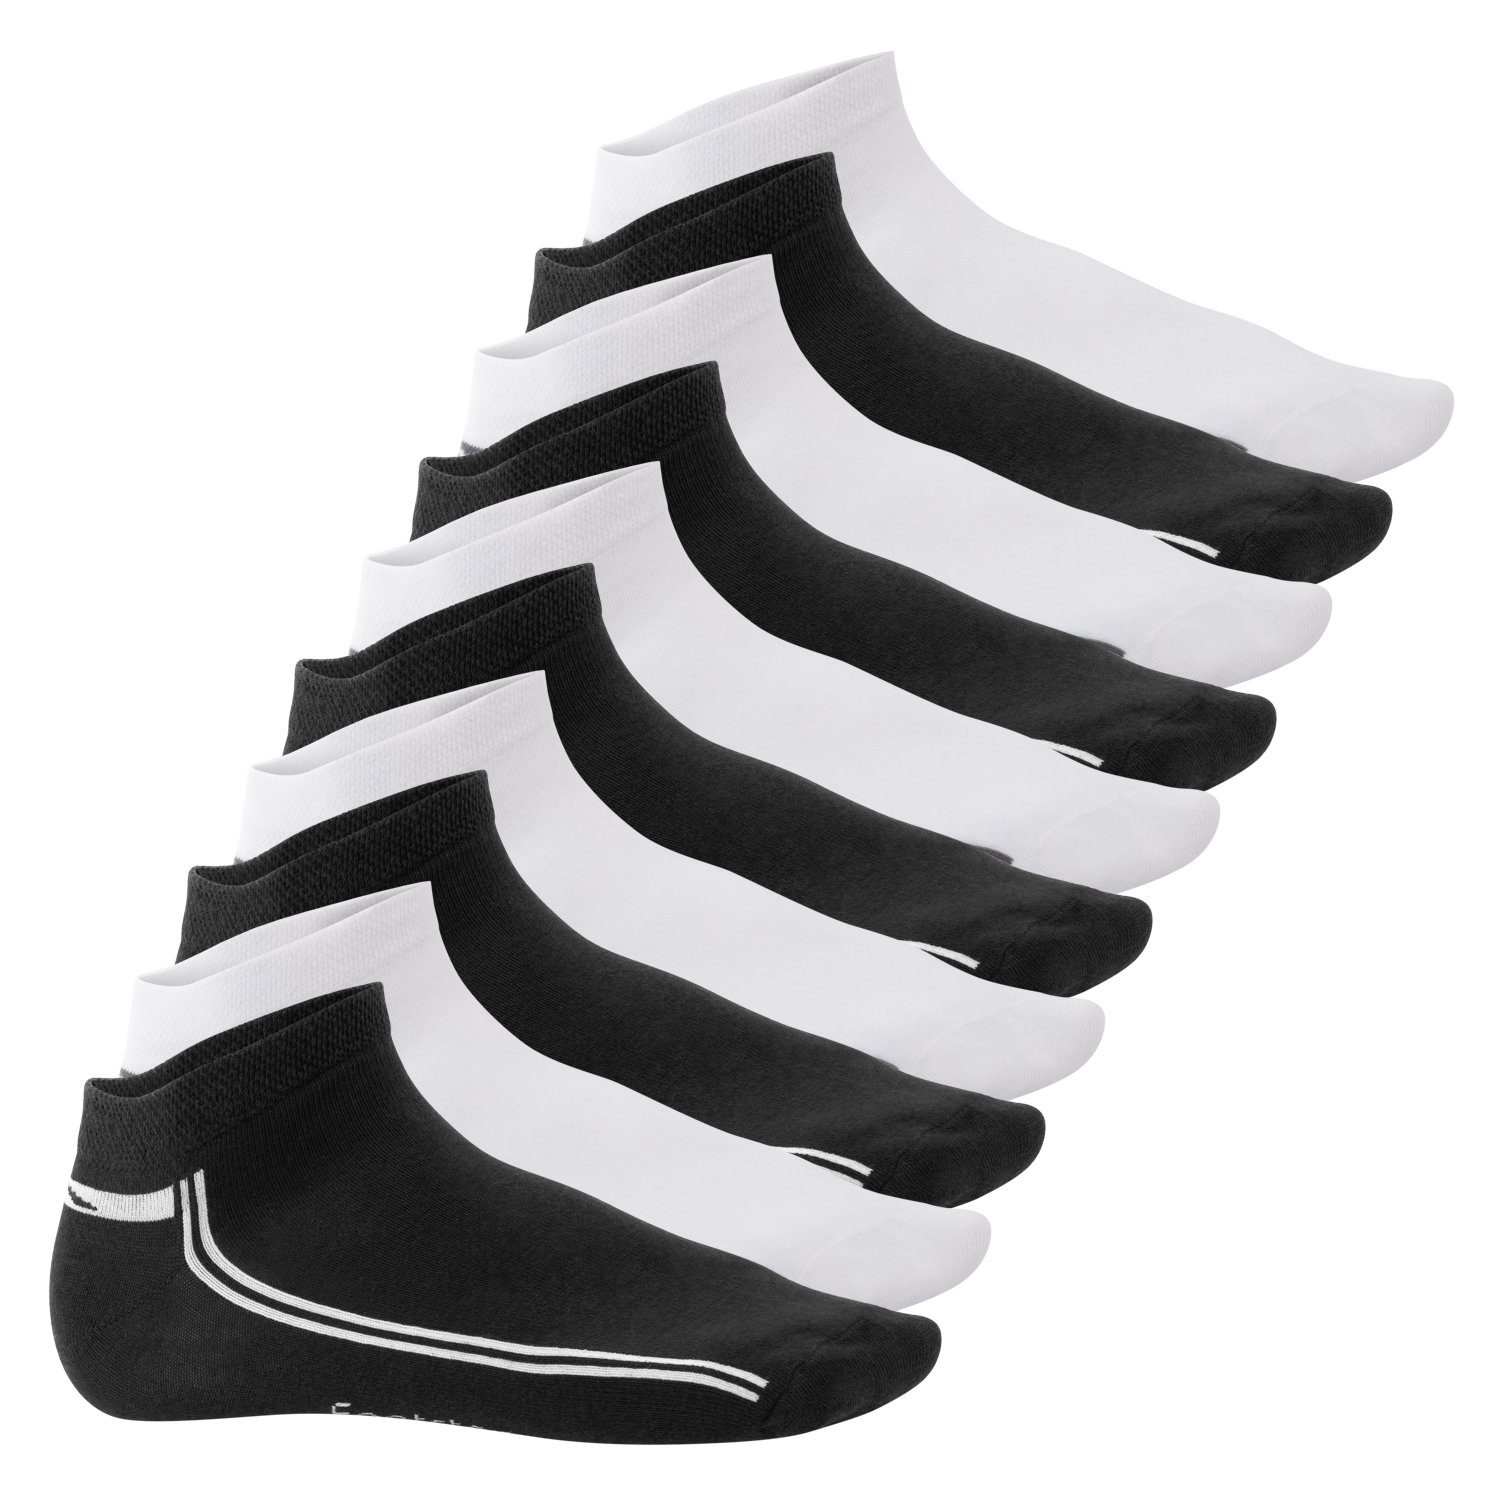 Footstar Füßlinge Sneak It! Damen & Herren Motiv Sneaker Socken (10 Paar) Schwarz-Weiß | Füßlinge